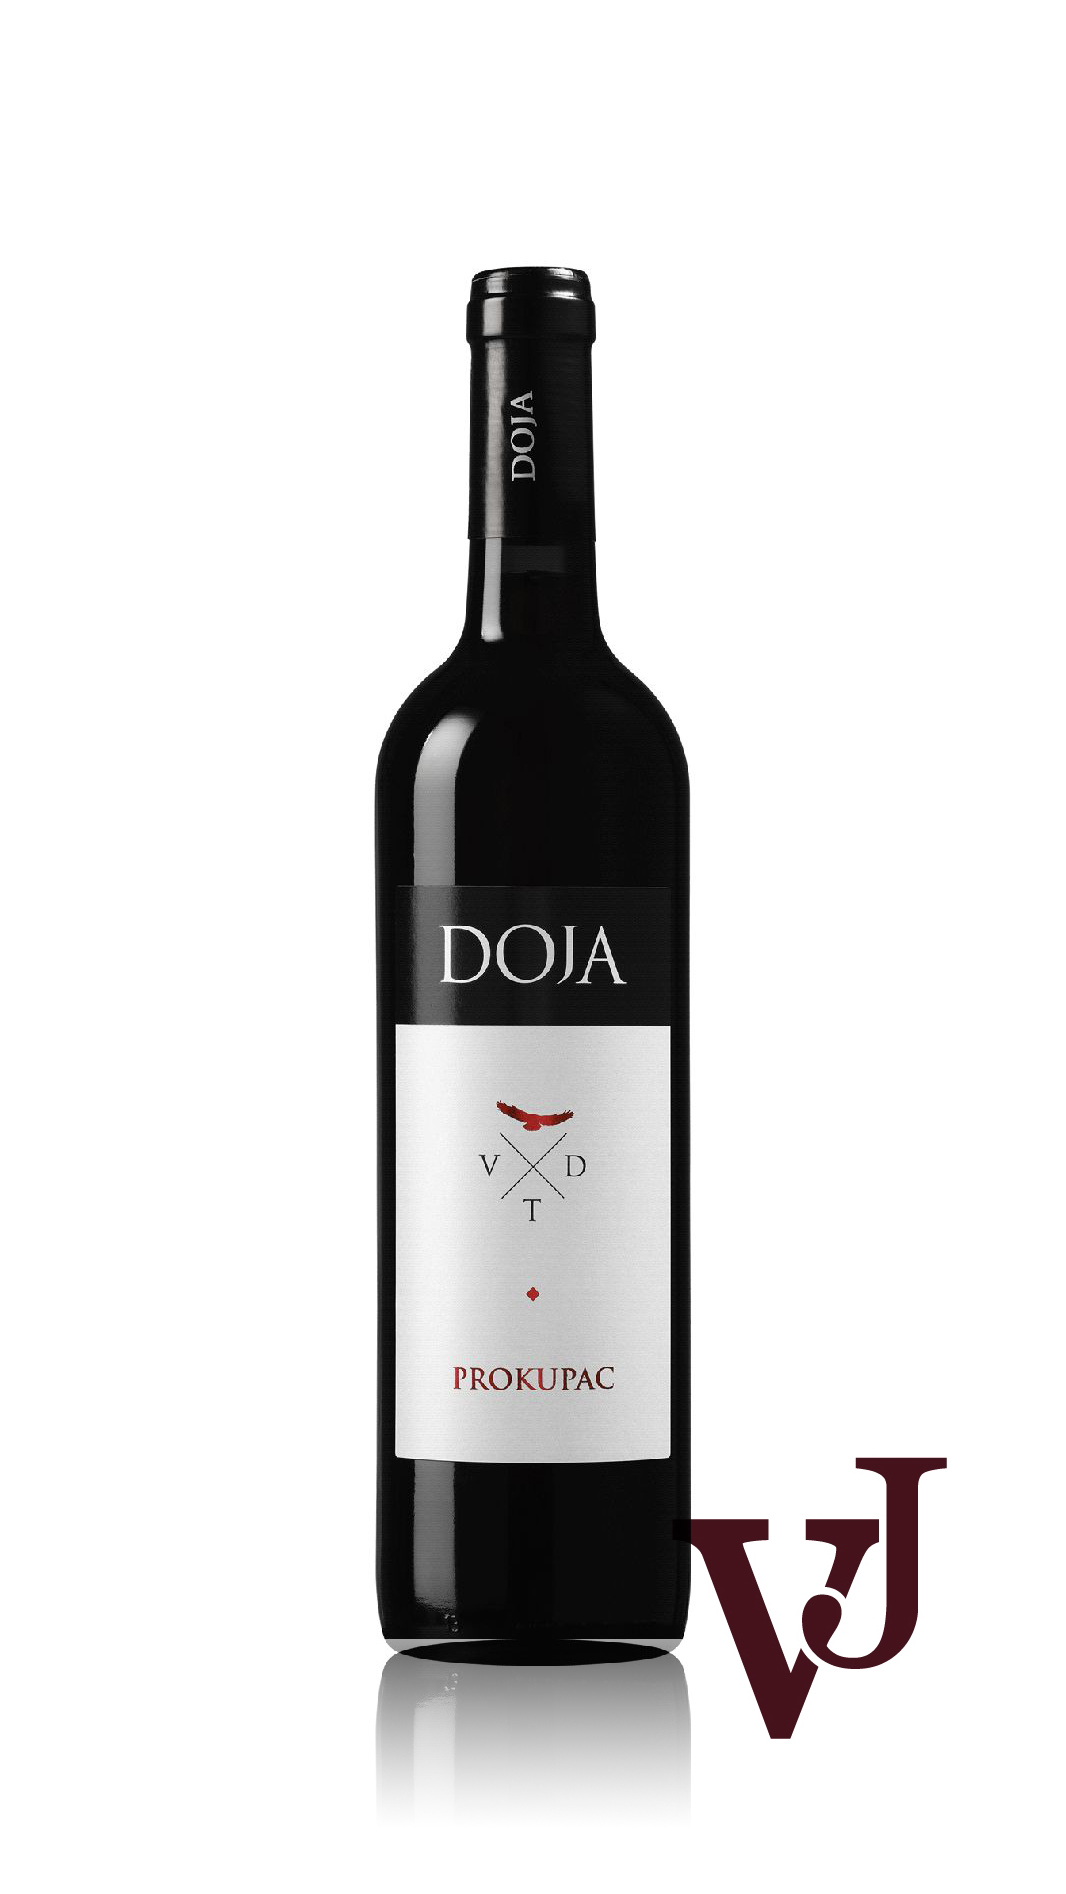 Rött Vin - DOJA PROKUPAC 2019 artikel nummer 7171101 från producenten Doja Winery från området Serbien.